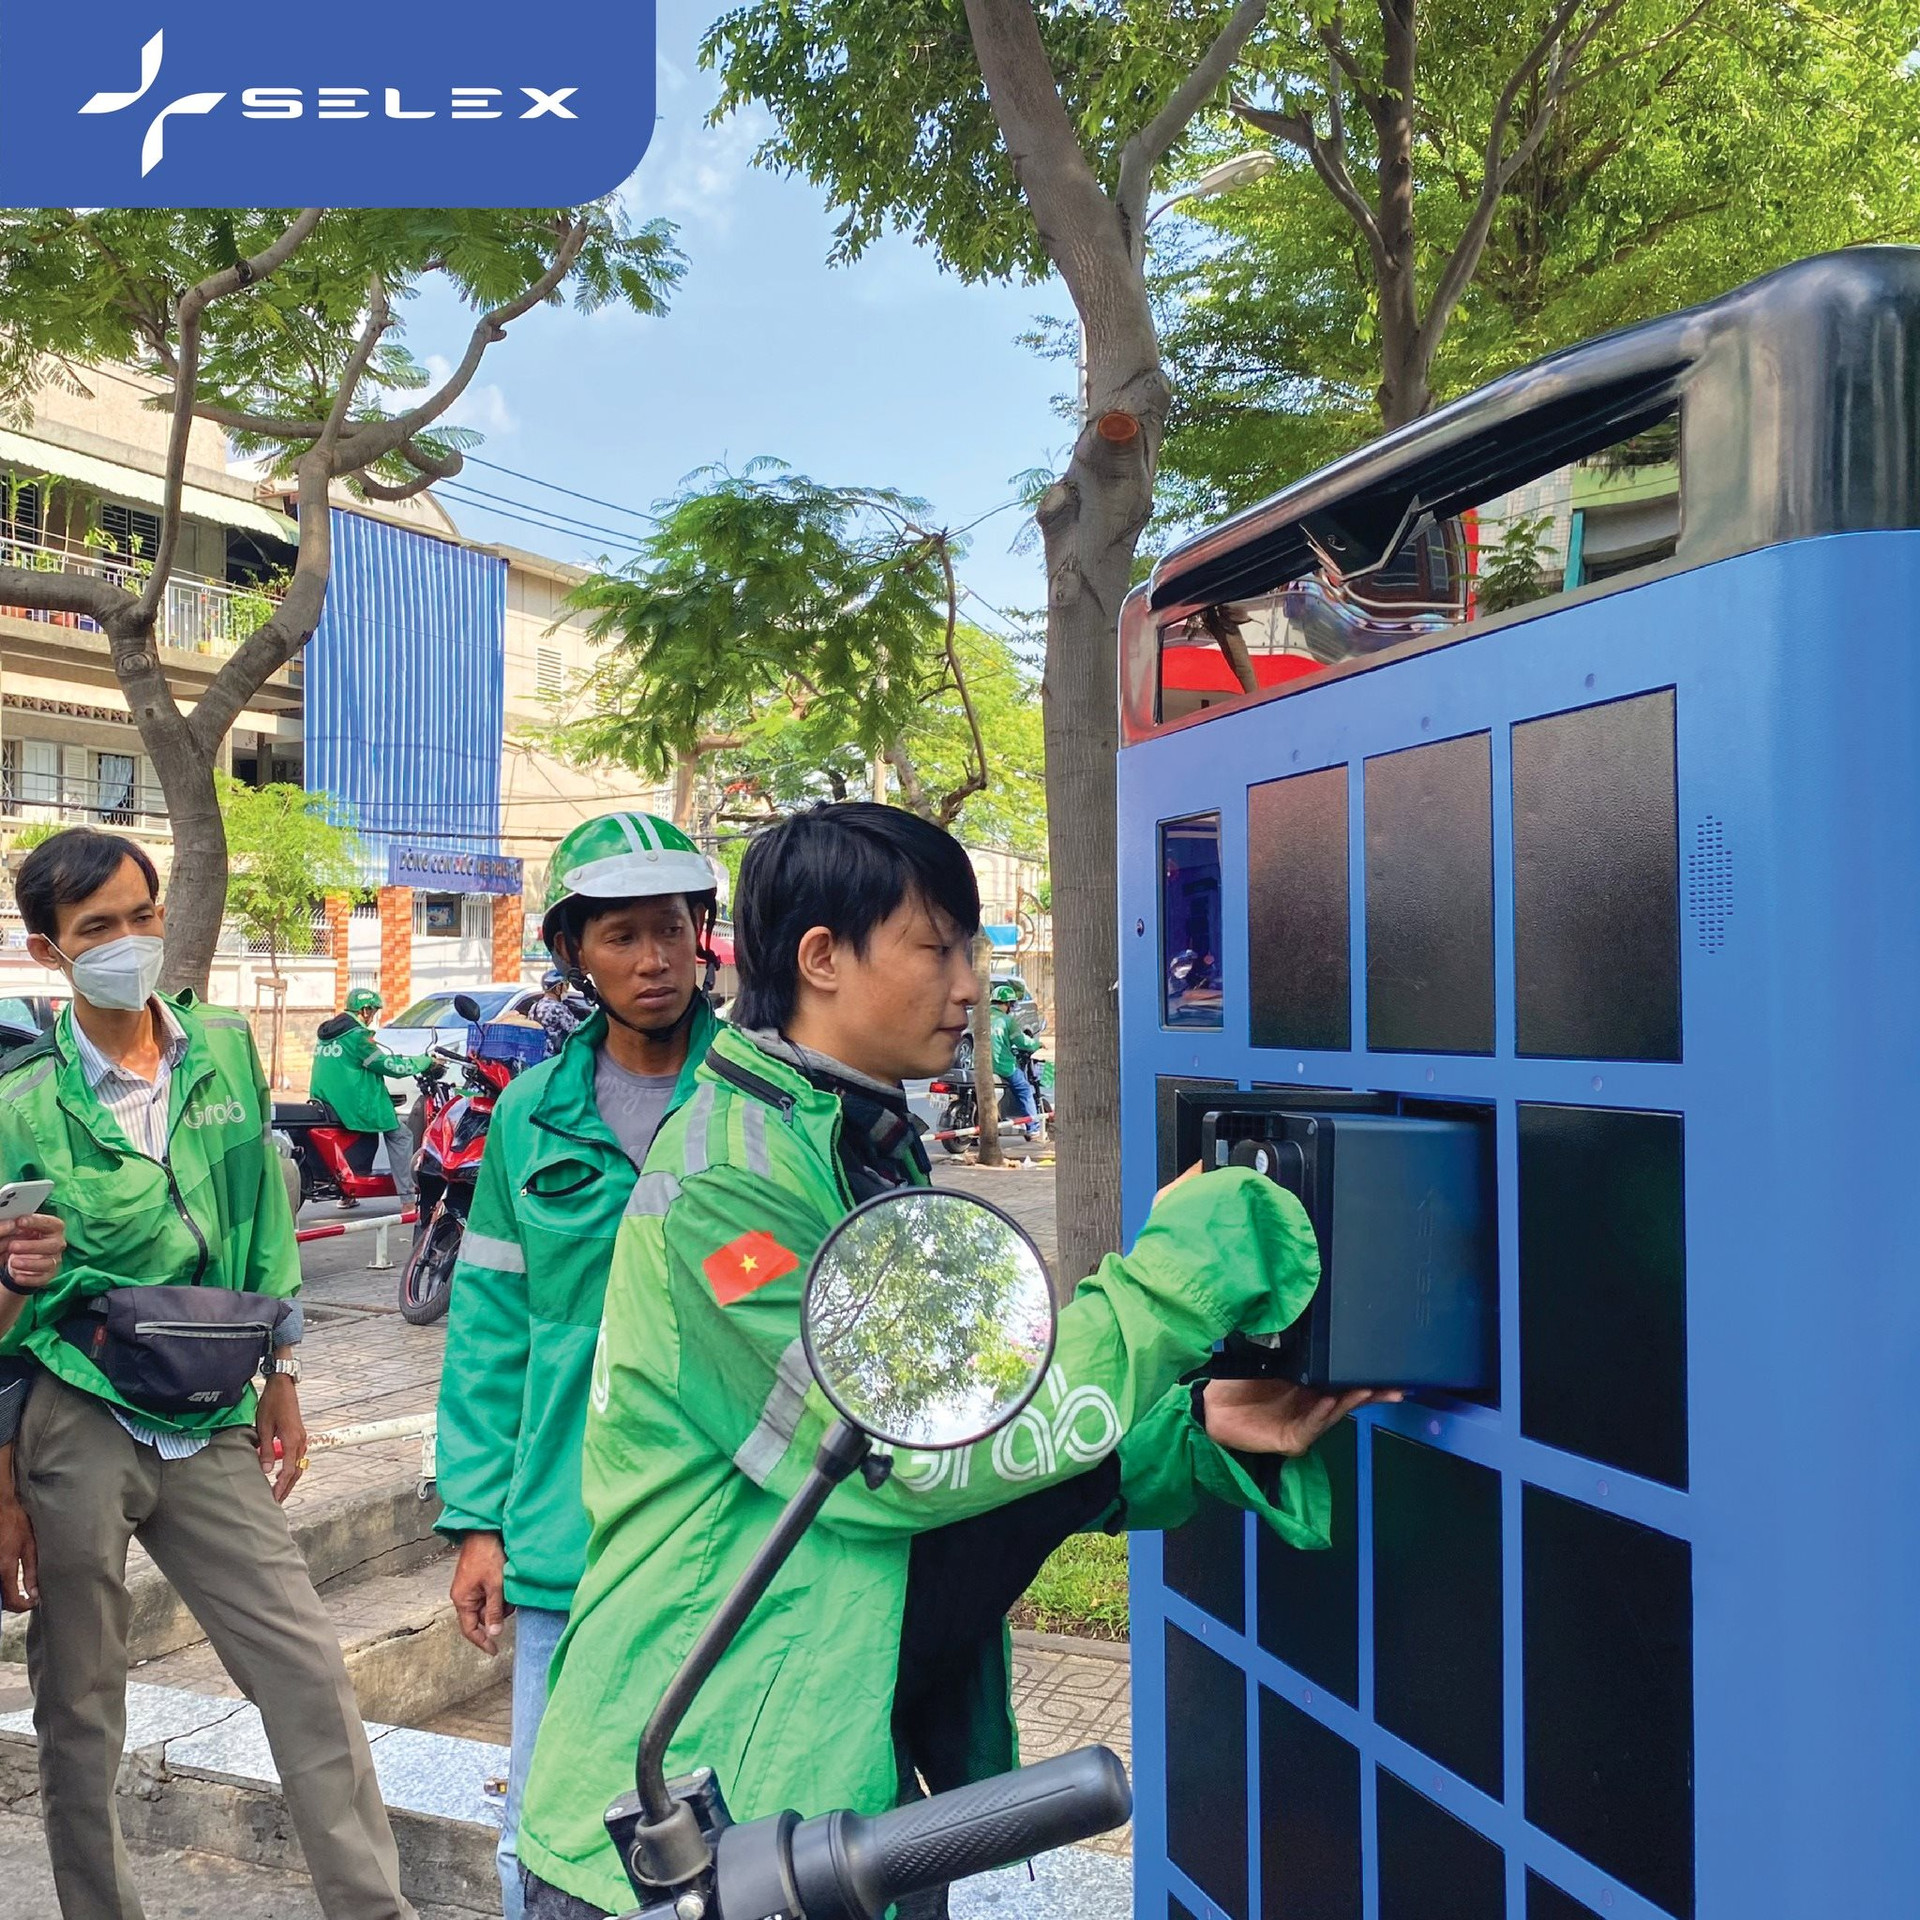 Chuyện làm trạm sạc của các hãng xe điện Việt: VinFast mở 150.000 cổng sạc, Dat Bike nhờ khách hàng... tự xây 80 điểm, Selex Motors khỏi cần xây trạm - Ảnh 4.